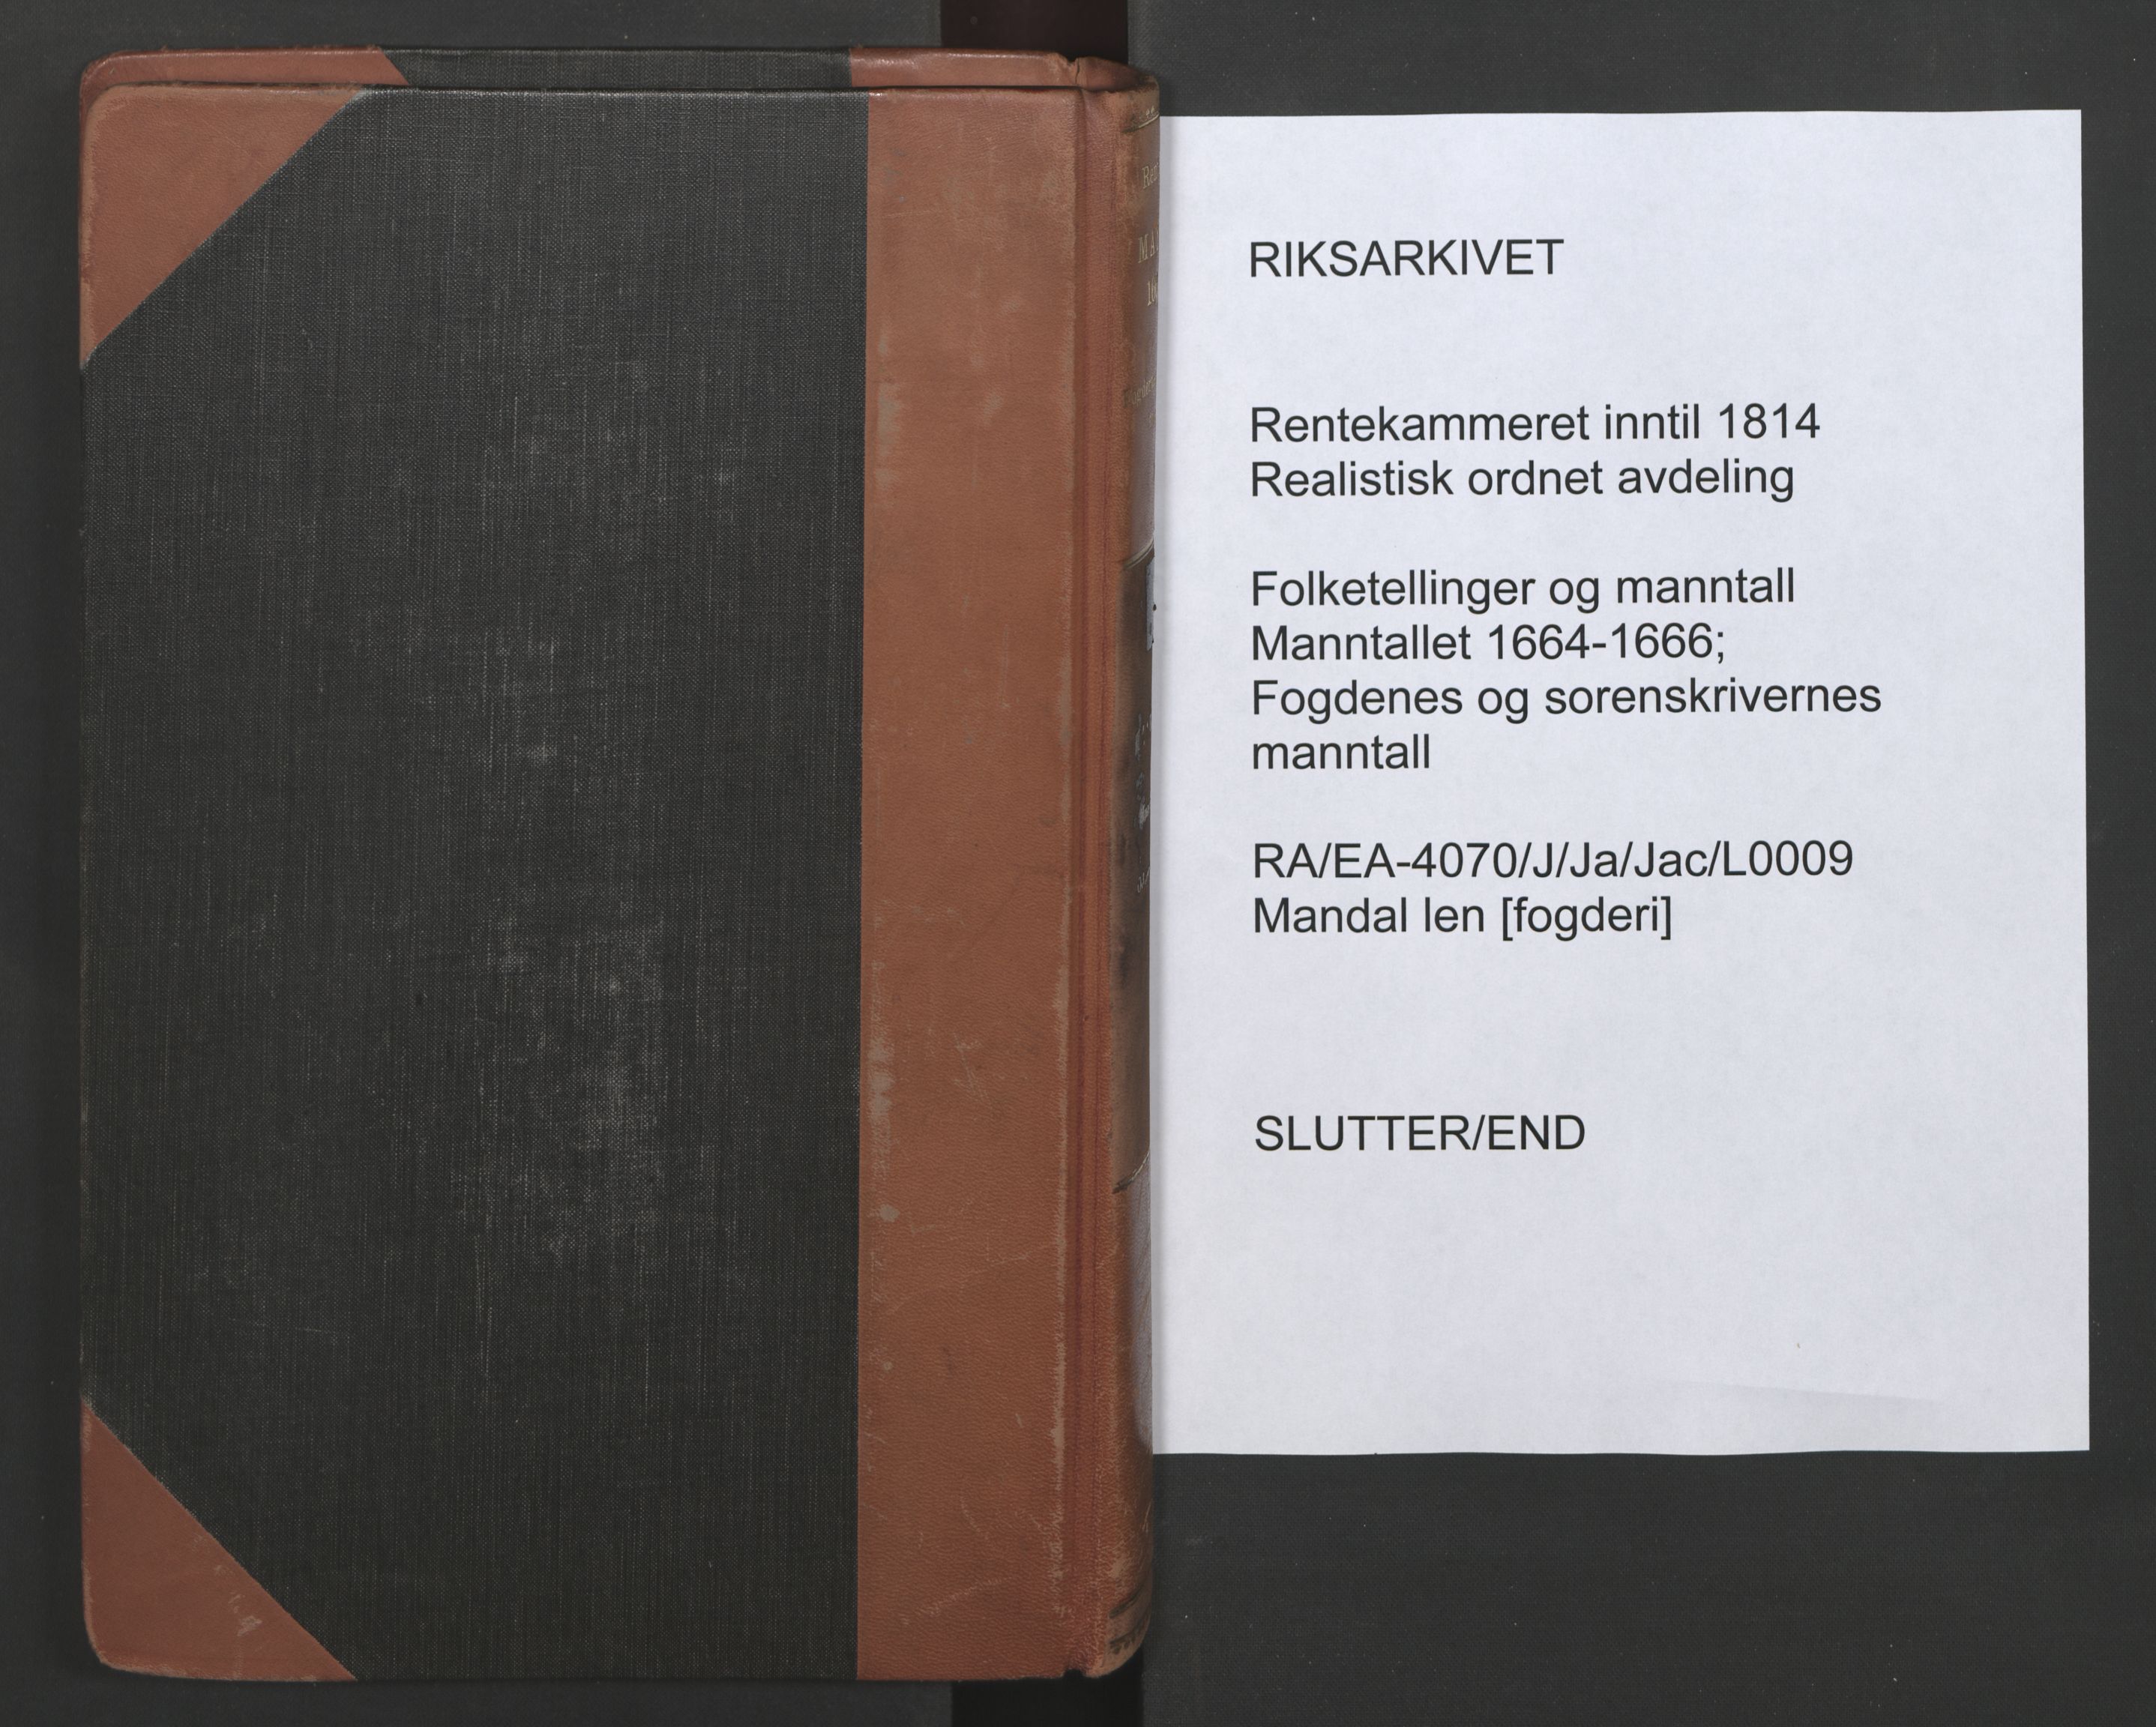 RA, Fogdenes og sorenskrivernes manntall 1664-1666, nr. 9: Mandal len, 1664-1666